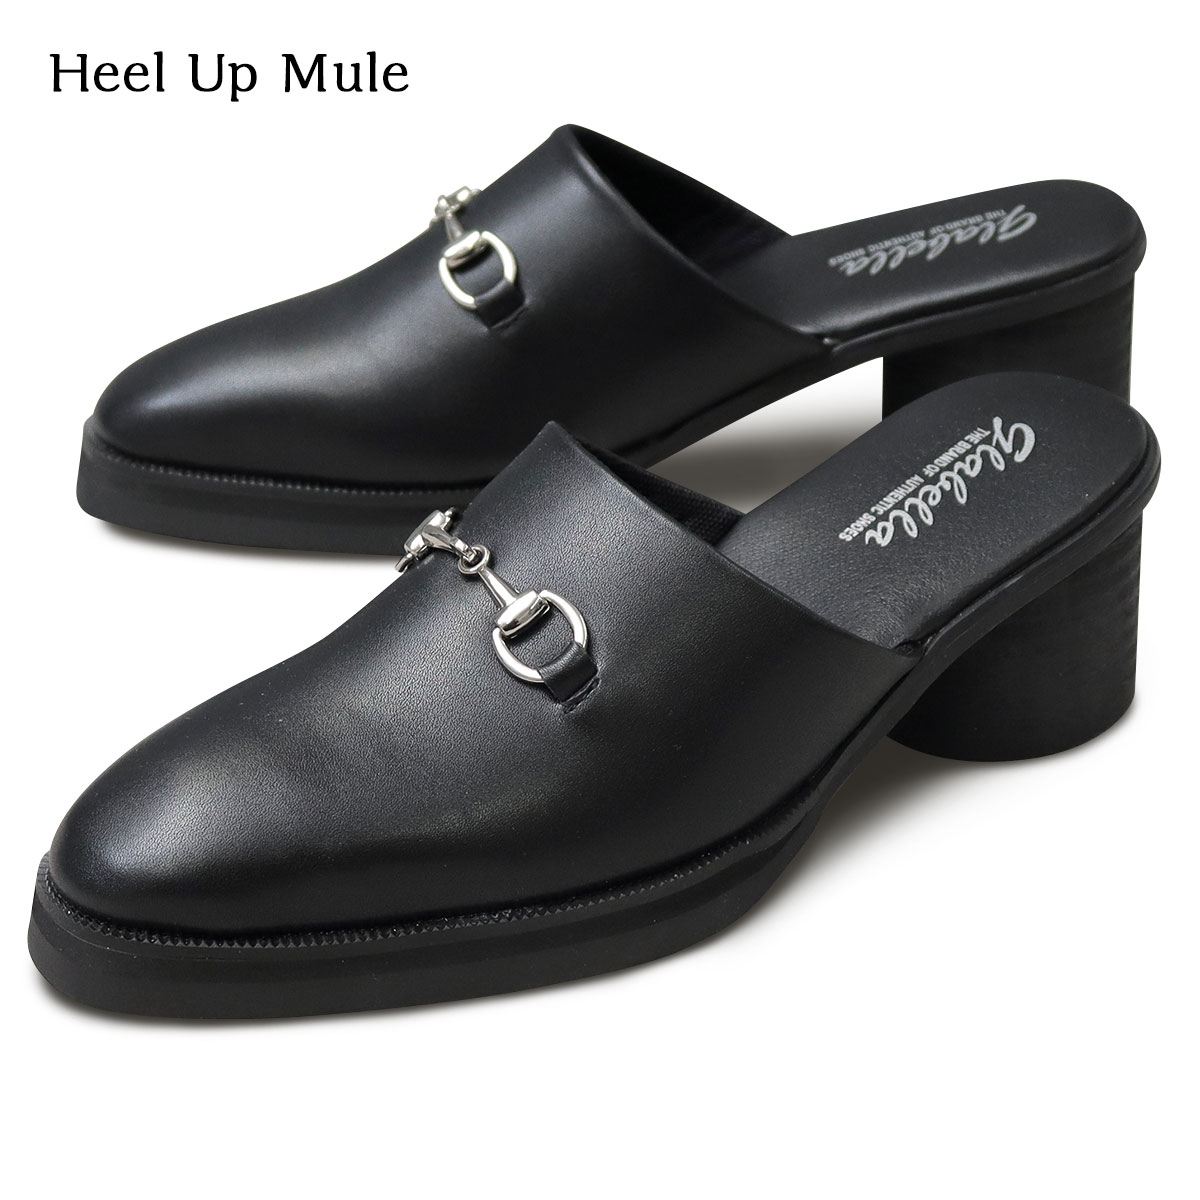 HEEL UP MULE シューズ くつ 靴 メンズ ミュール ハイヒール モードスタイル モード系 マストアイテム ミニマル シャープ 細身 ヒール高 7センチ ミュールタイプ